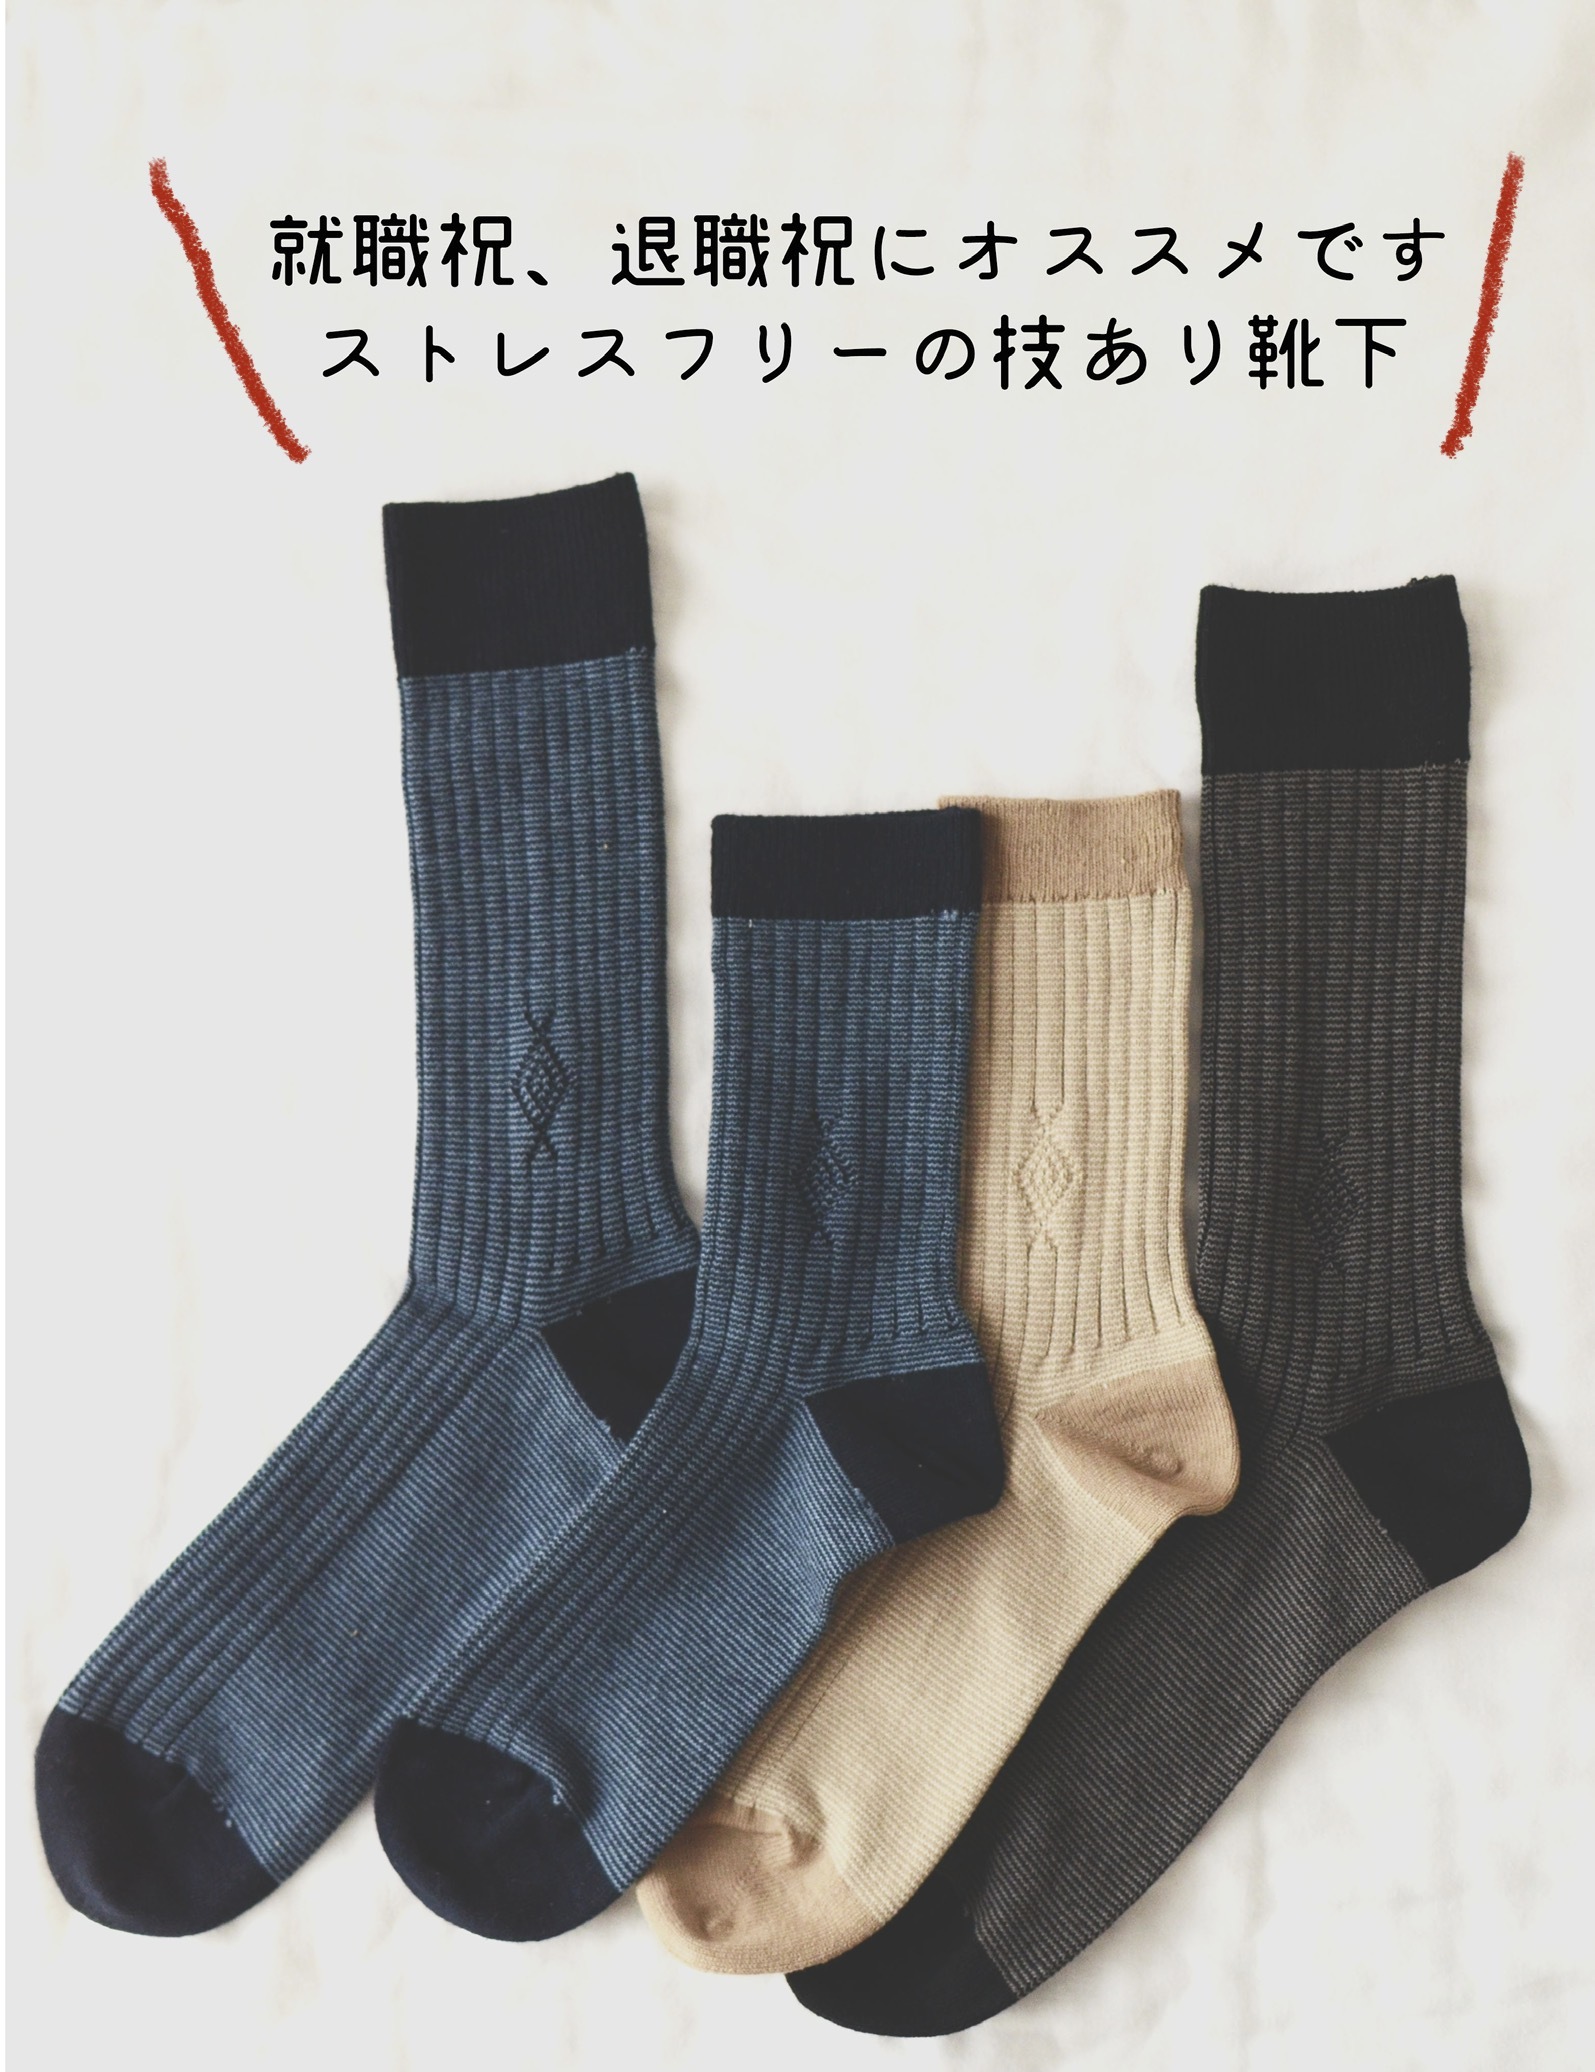 ストレスフリーの技あり靴下 日本製 たむら靴下店